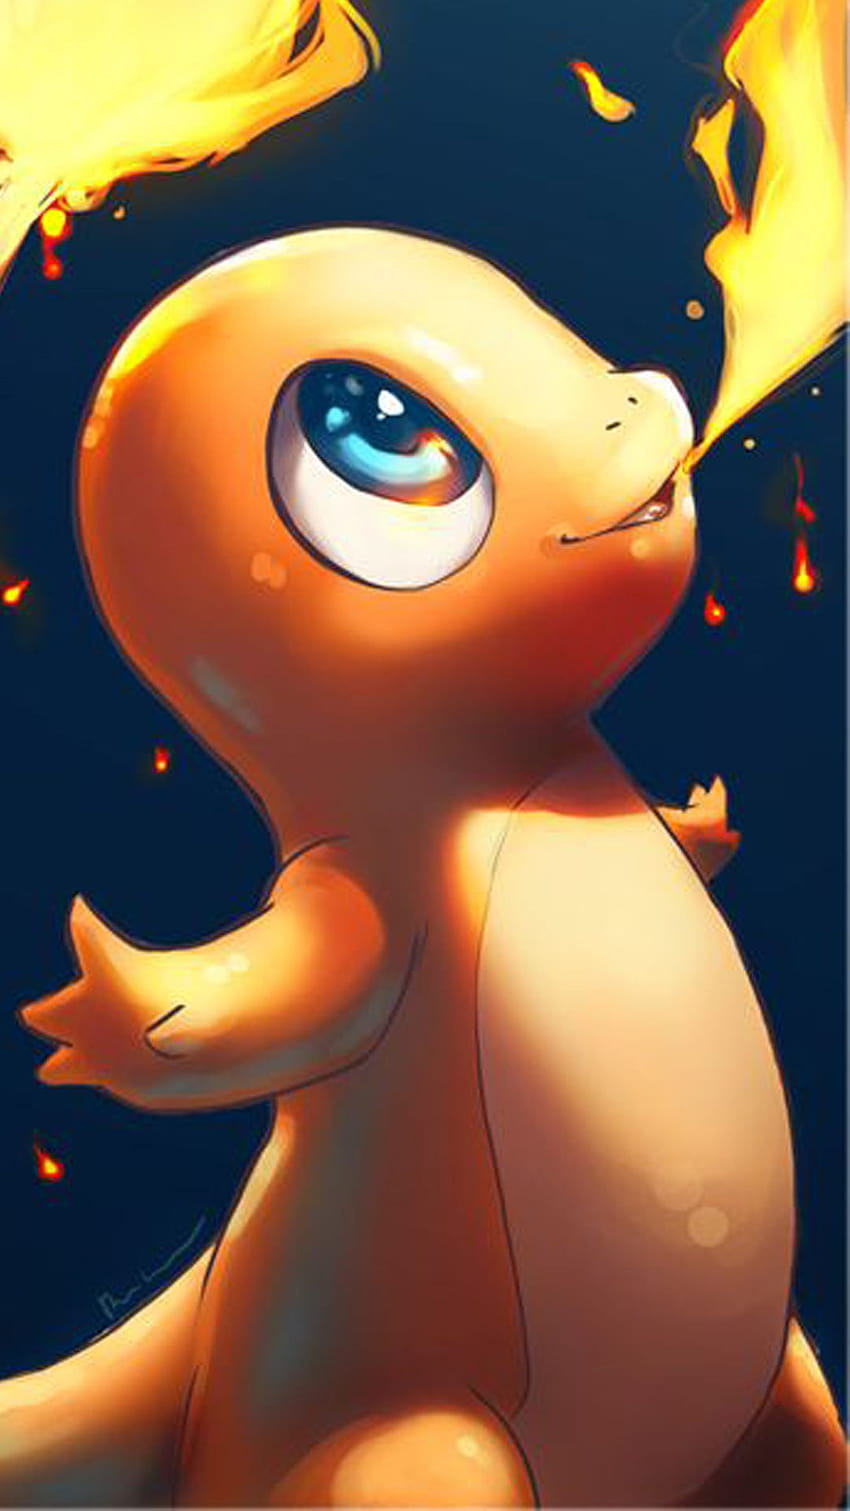 Hình nền Pokemon HD sẽ đem đến cho bạn một trải nghiệm tuyệt vời trong thế giới của các Pokémon yêu thích của bạn. Hãy khám phá và đắm chìm trong những hình ảnh hoành tráng của Pikachu, Charmander, Squirtle và nhiều Pokémon khác trong độ phân giải cao!